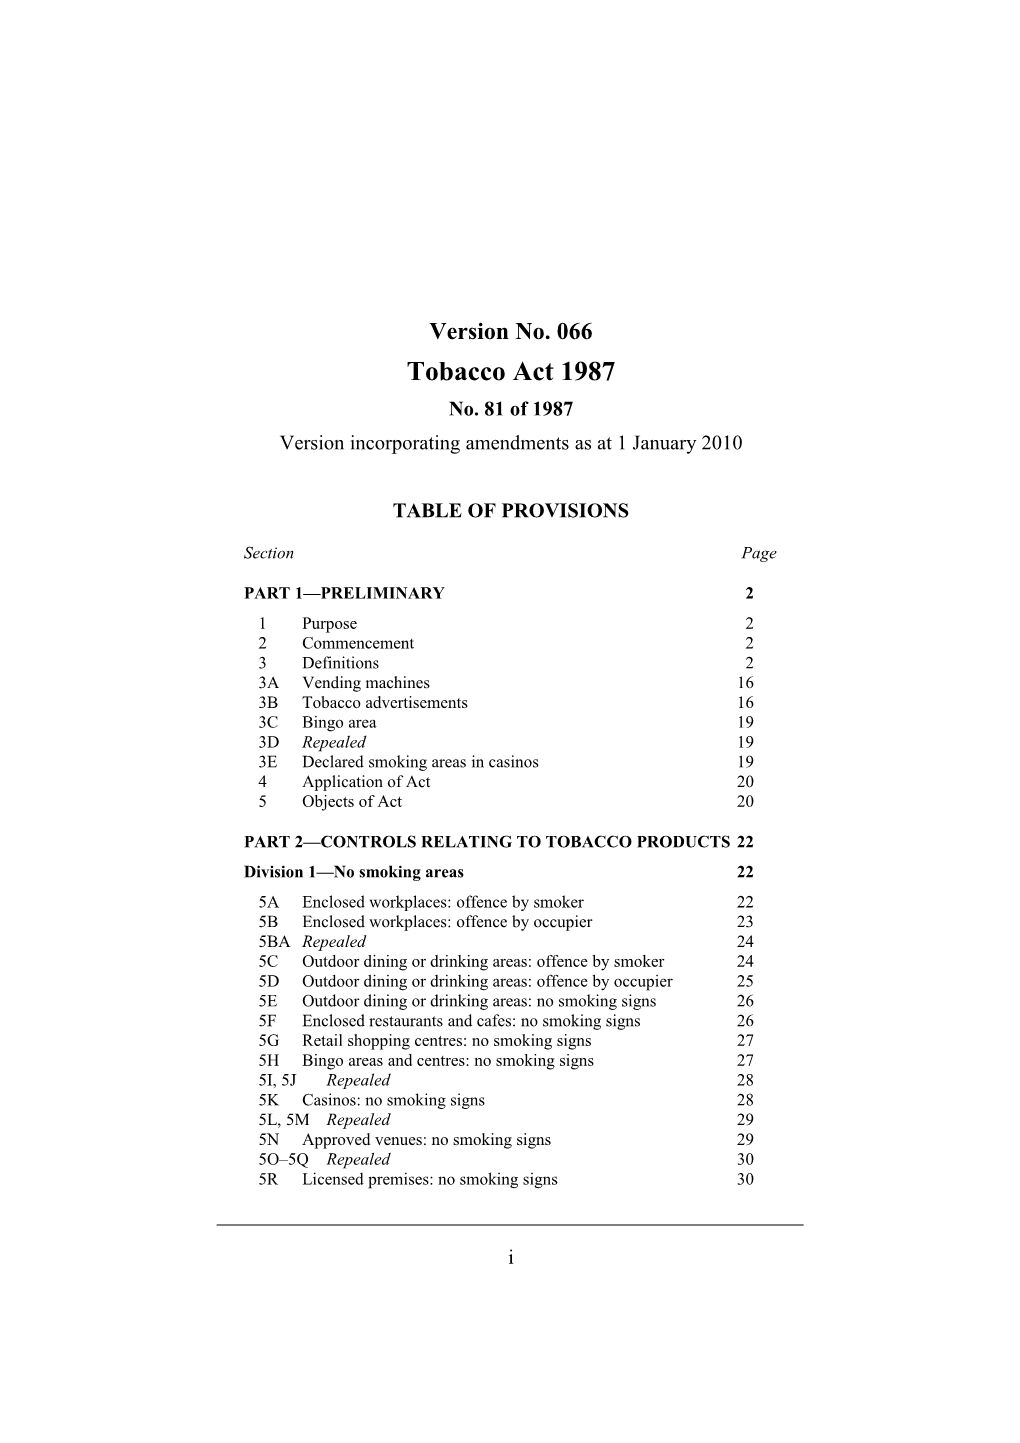 Version Incorporating Amendments As at 1 January 2010